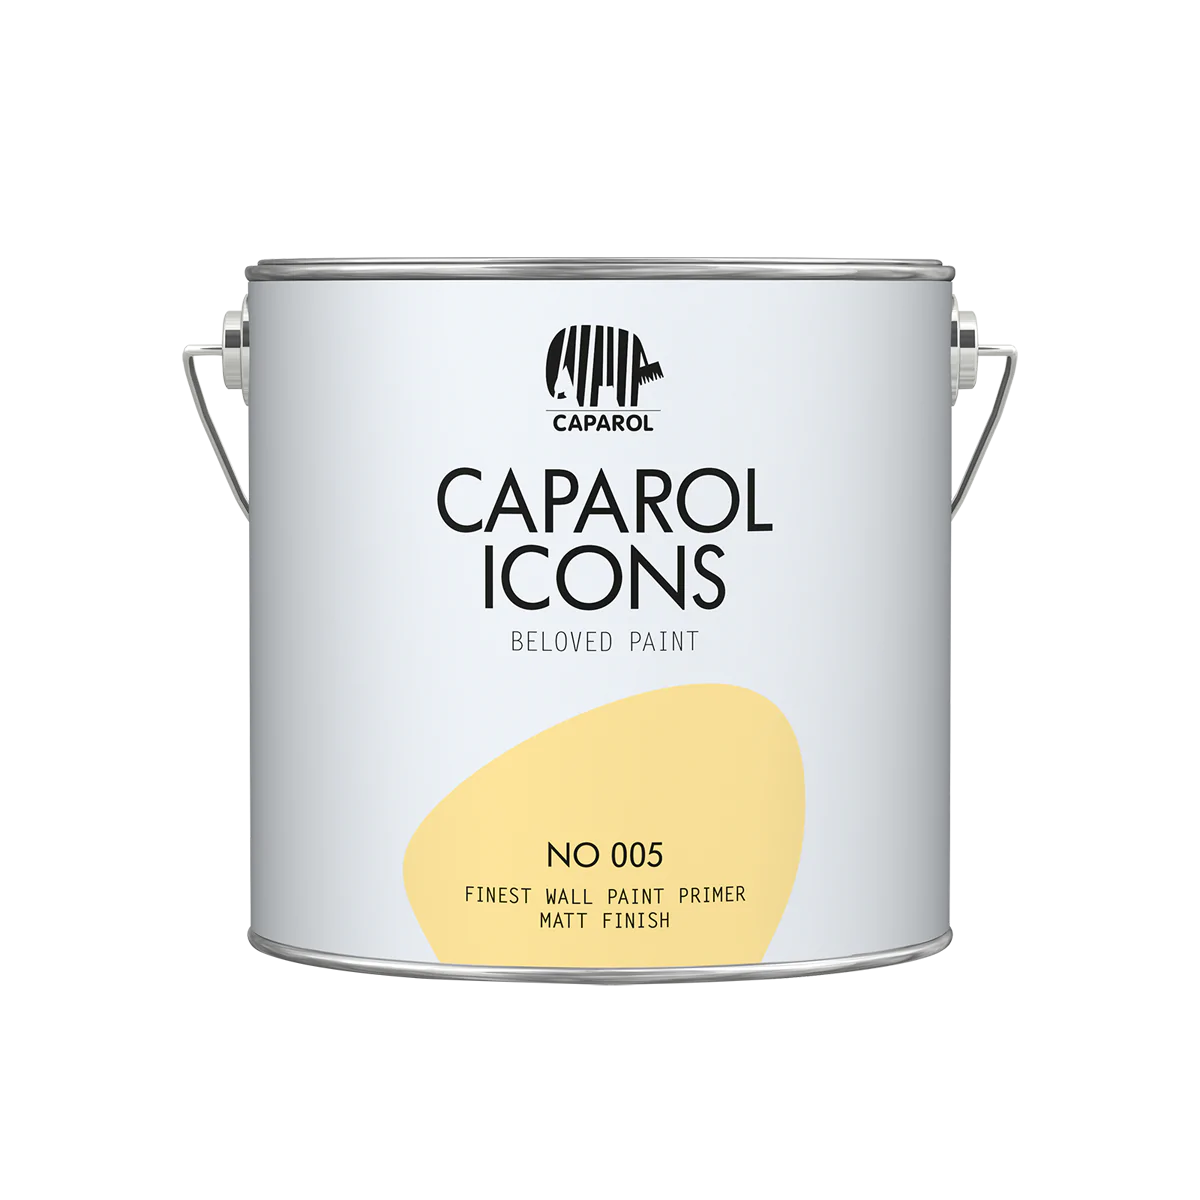 Caparol ICONS FINEST WALL PRIMER NO 005, 2,5l